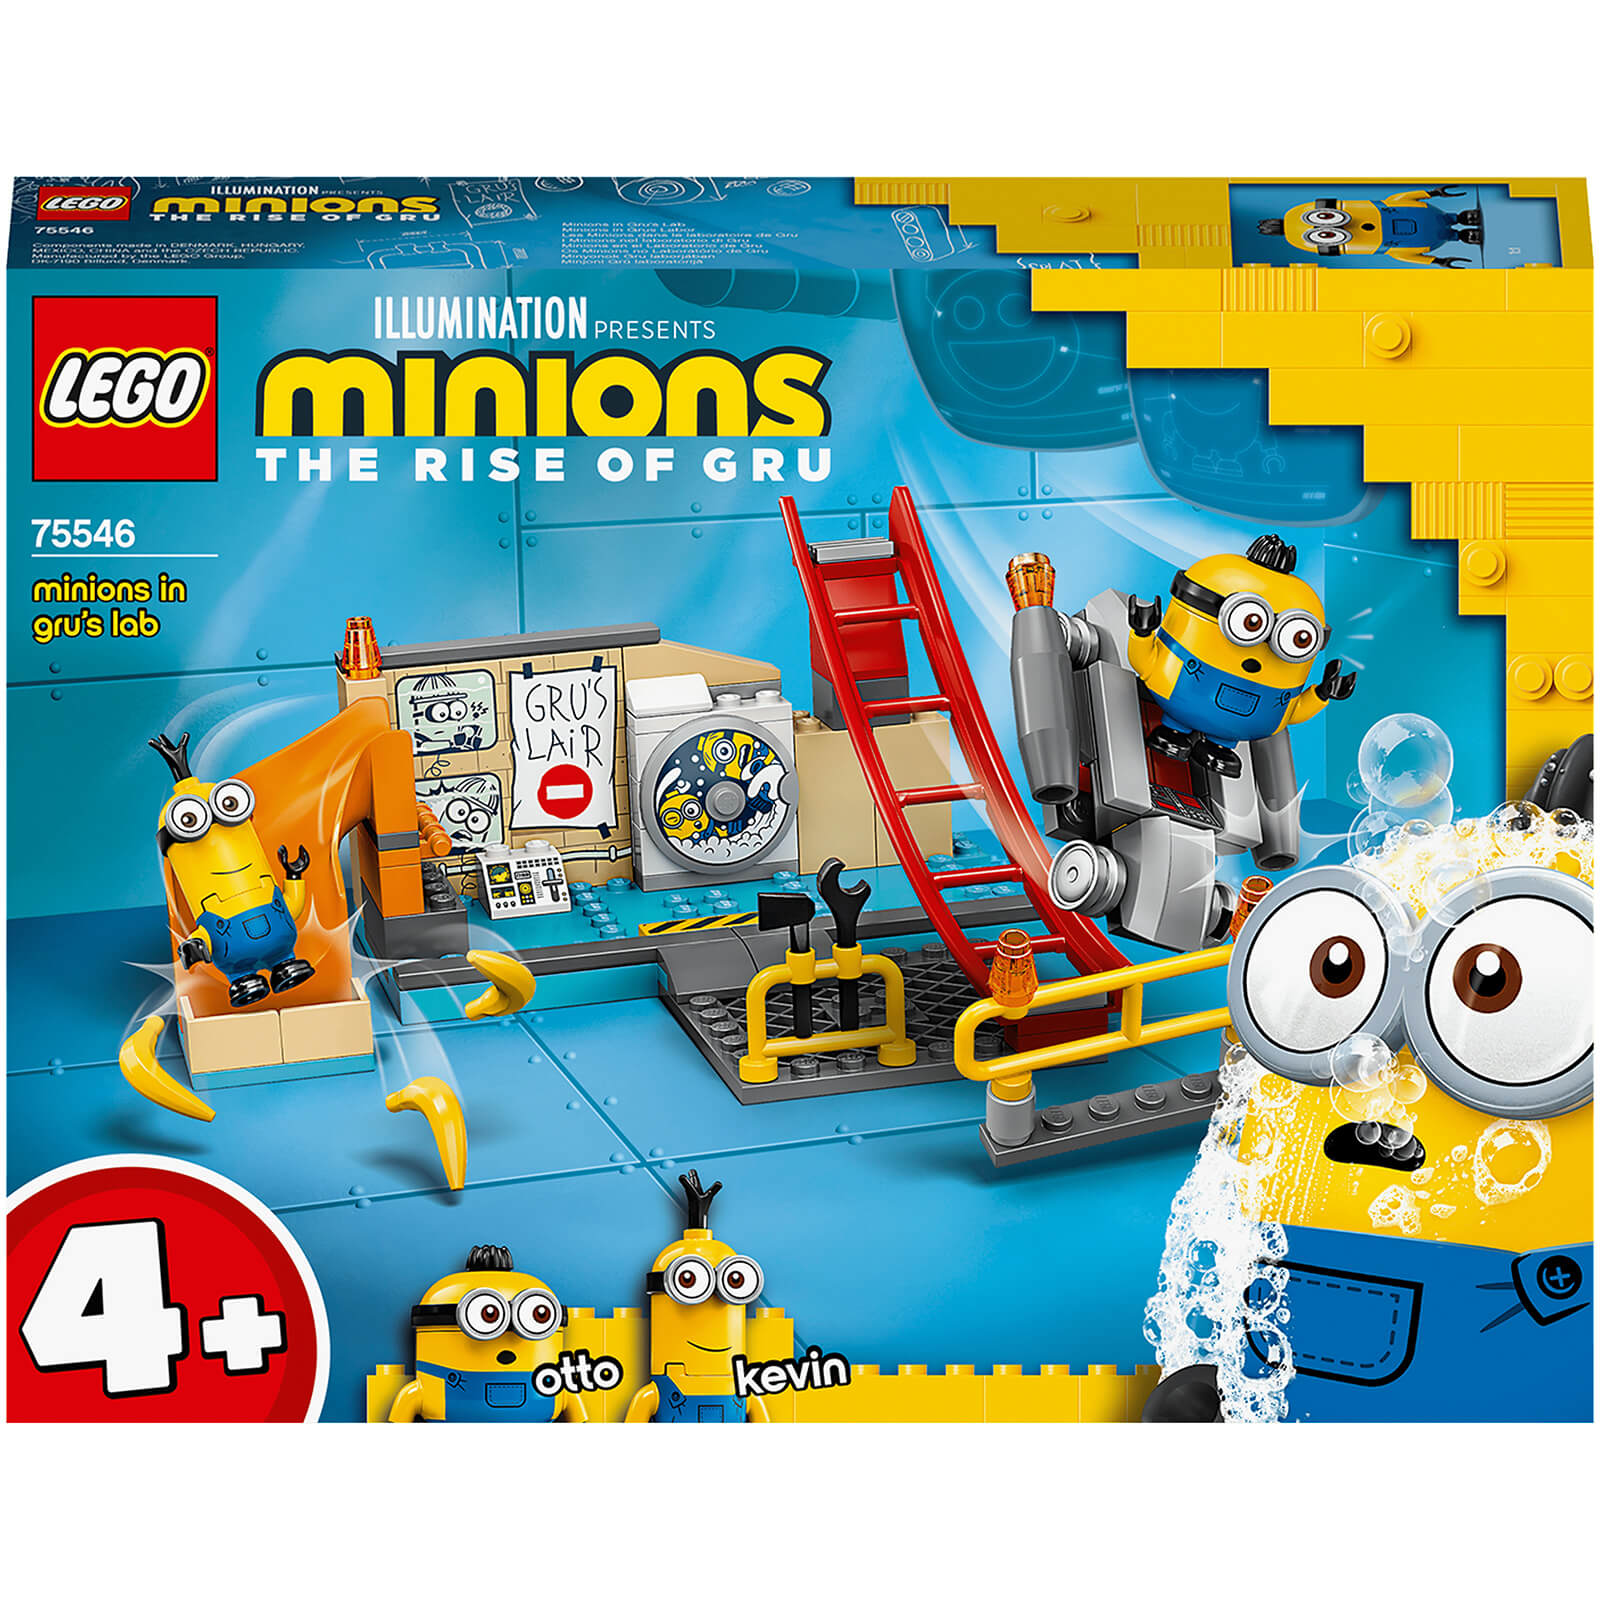 LEGO 4+ Minions: in Gru’s Lab Building Set (75546)